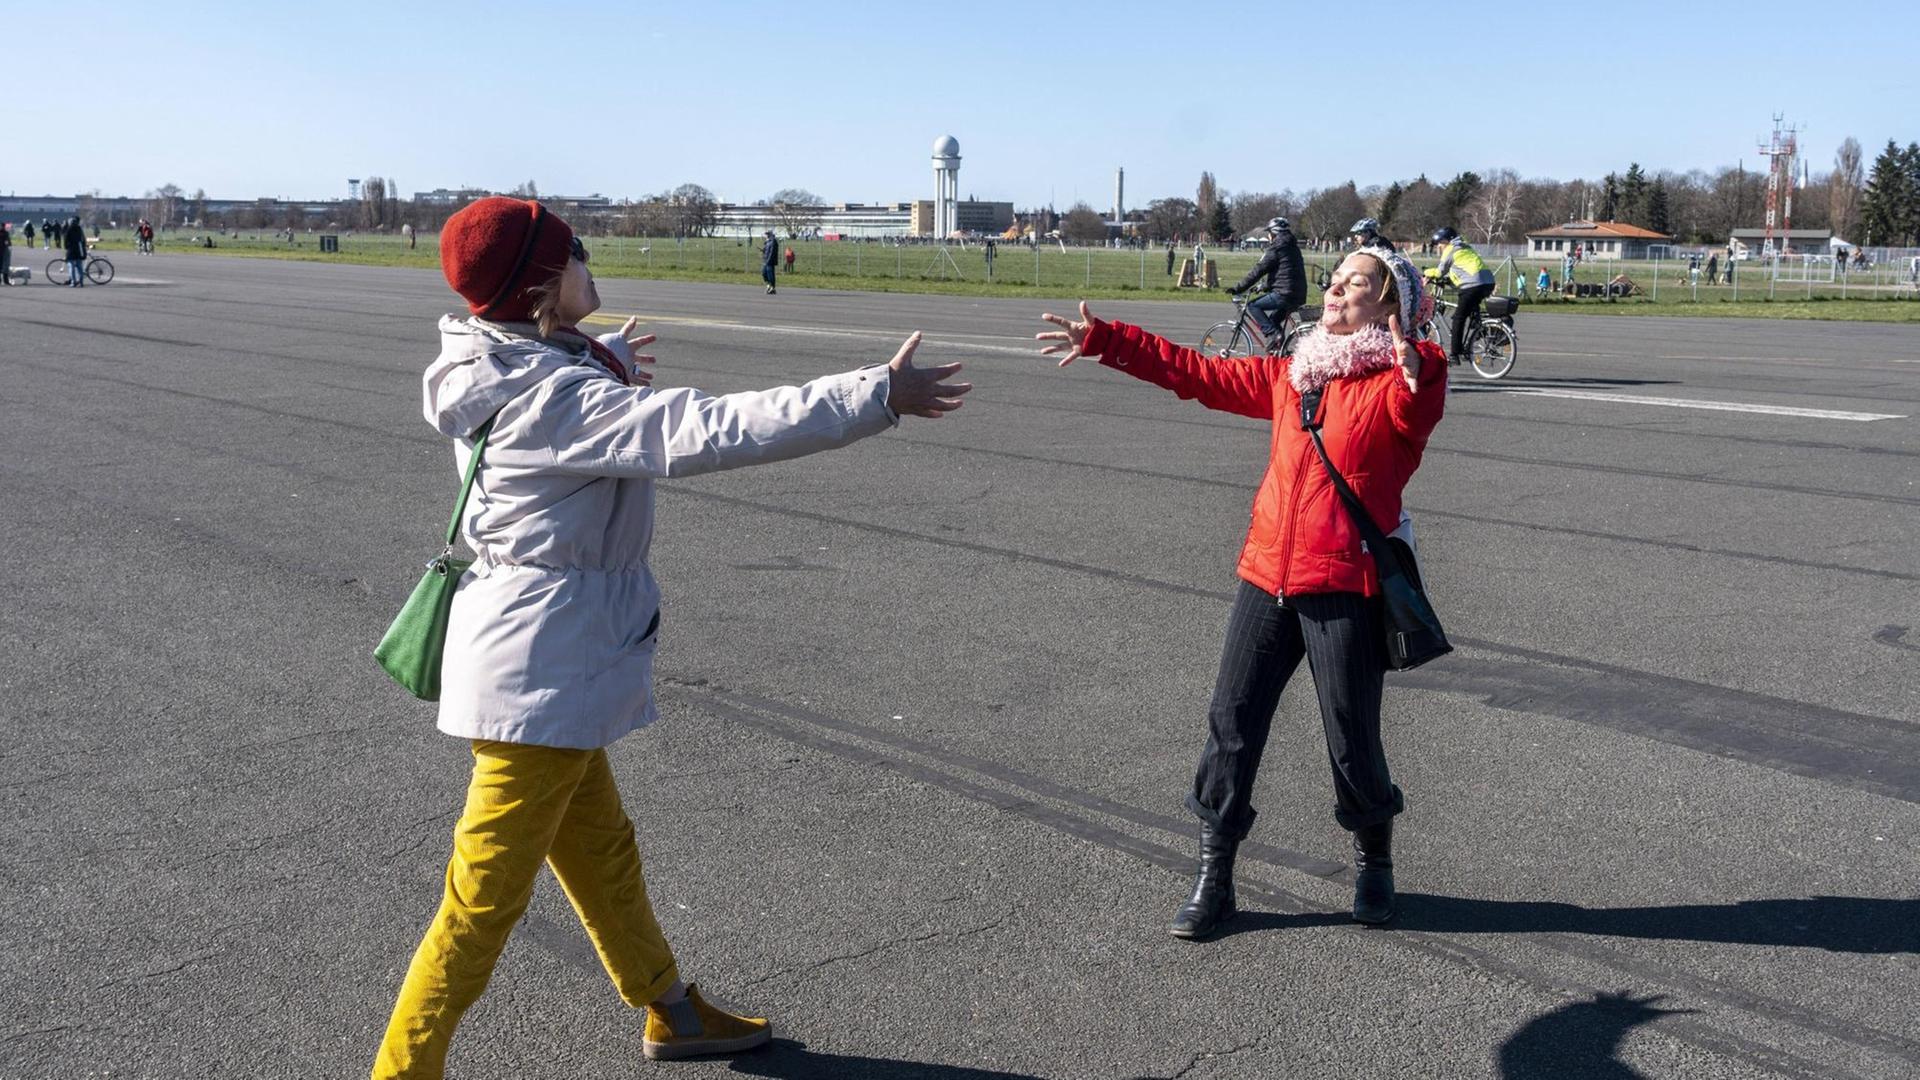 Zwei Frauen Begrüßen sich mit einer angedeuteten Umarmung aus der Distanz auf dem Tempelhofes Feld in Berlin.